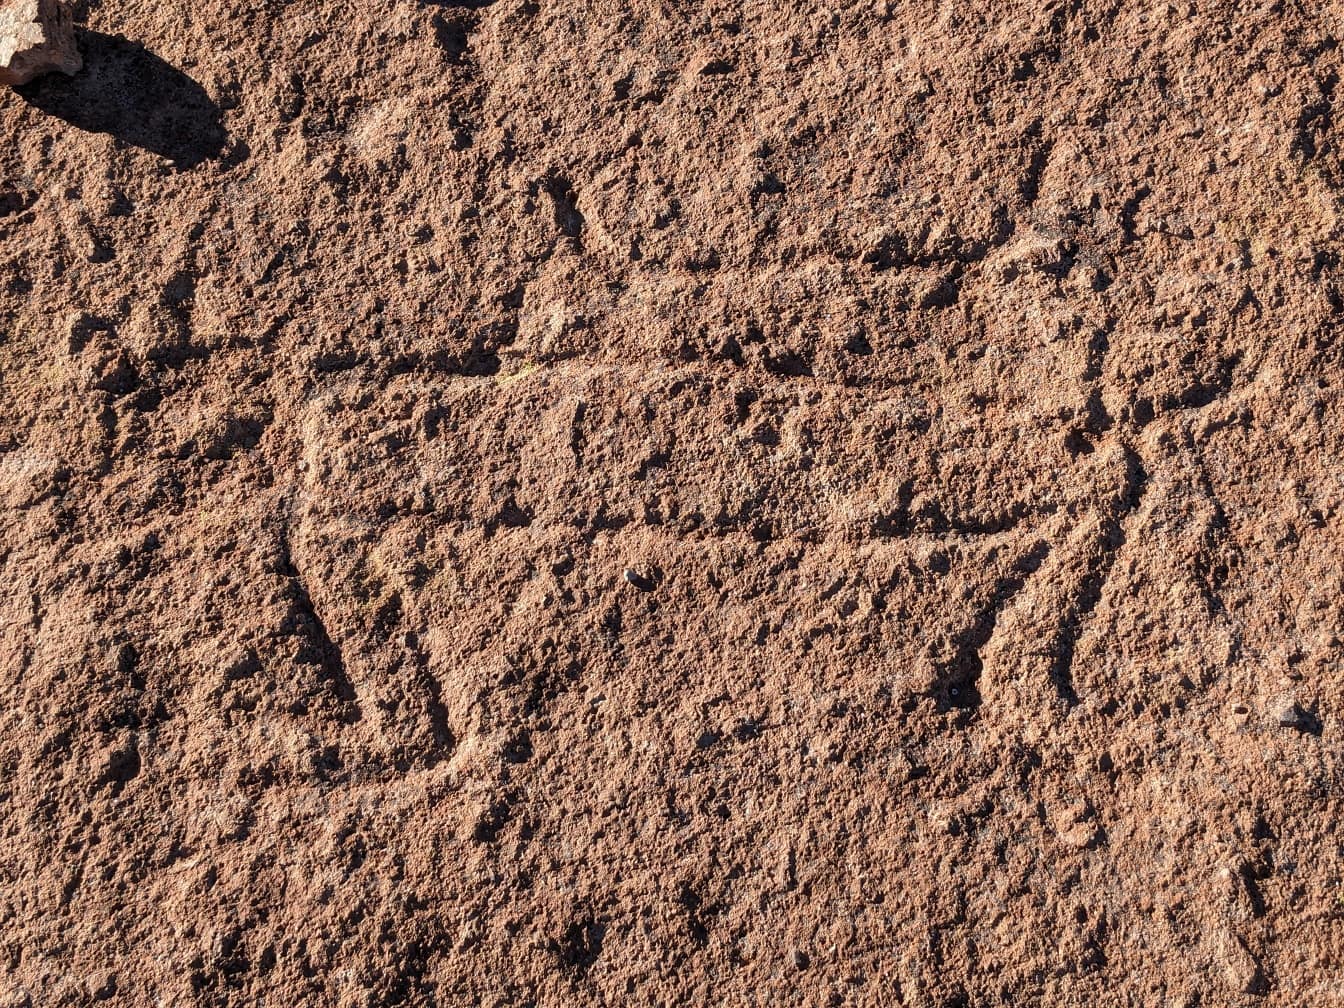 Starożytne petroglify, ryty naskalne w Ameryce Południowej datowane na okres prehistoryczny